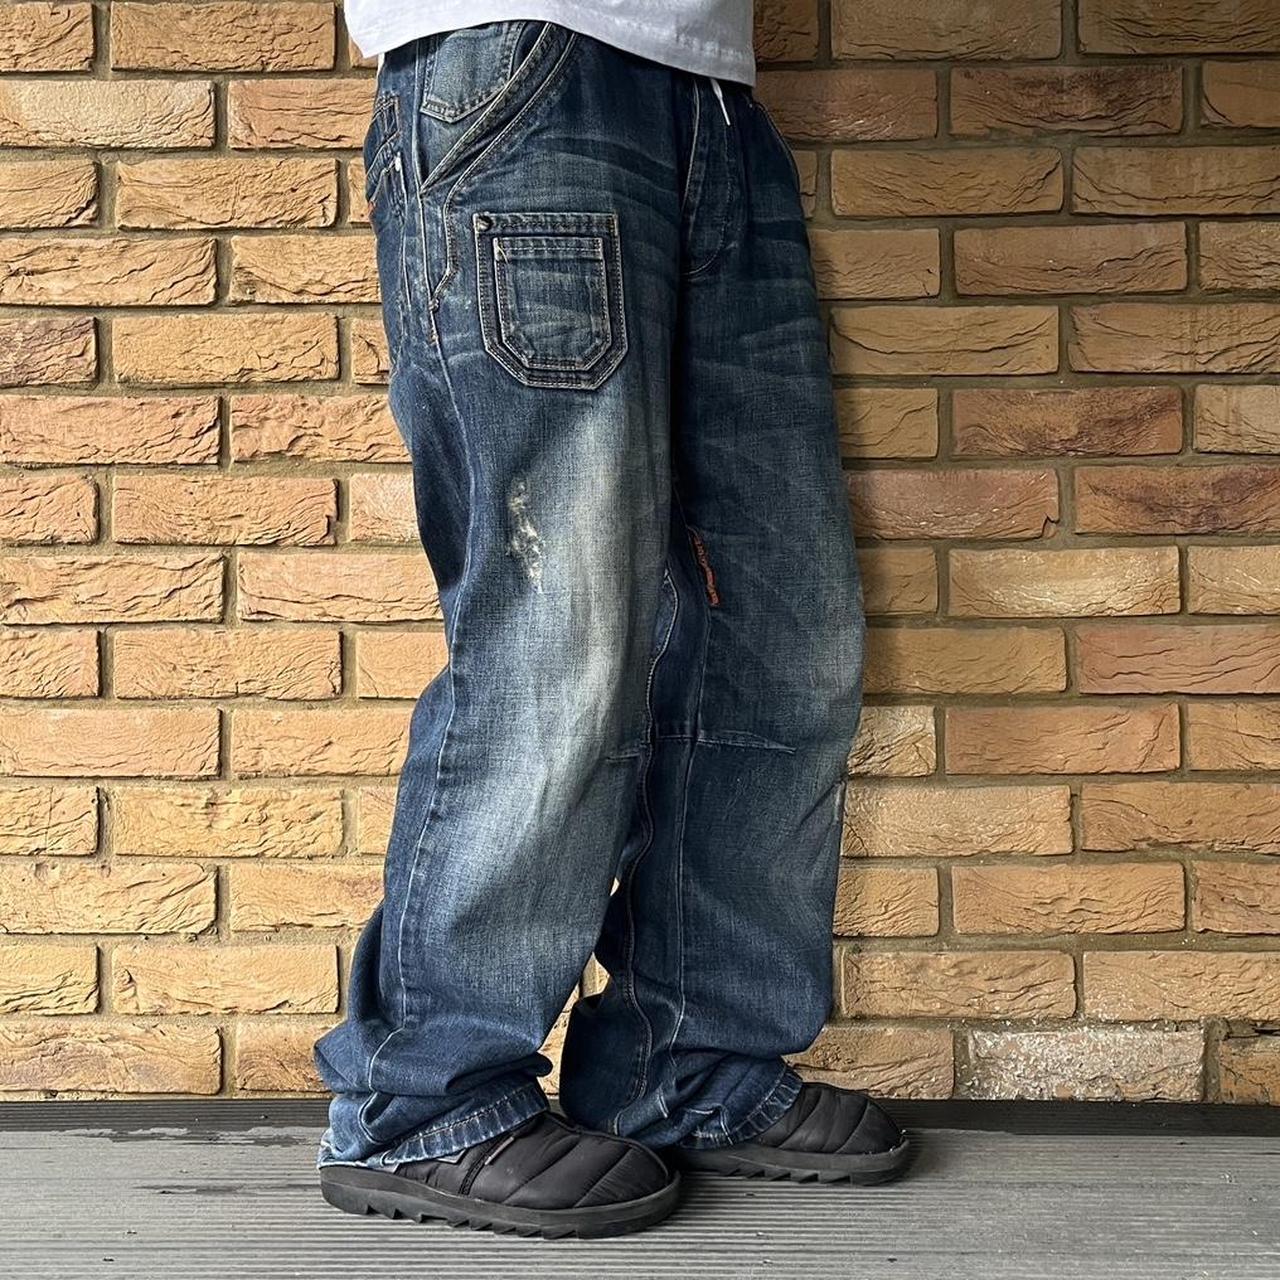 Baggy Vintage Jeans 2000s Skater Pants W34 (fit... - Depop